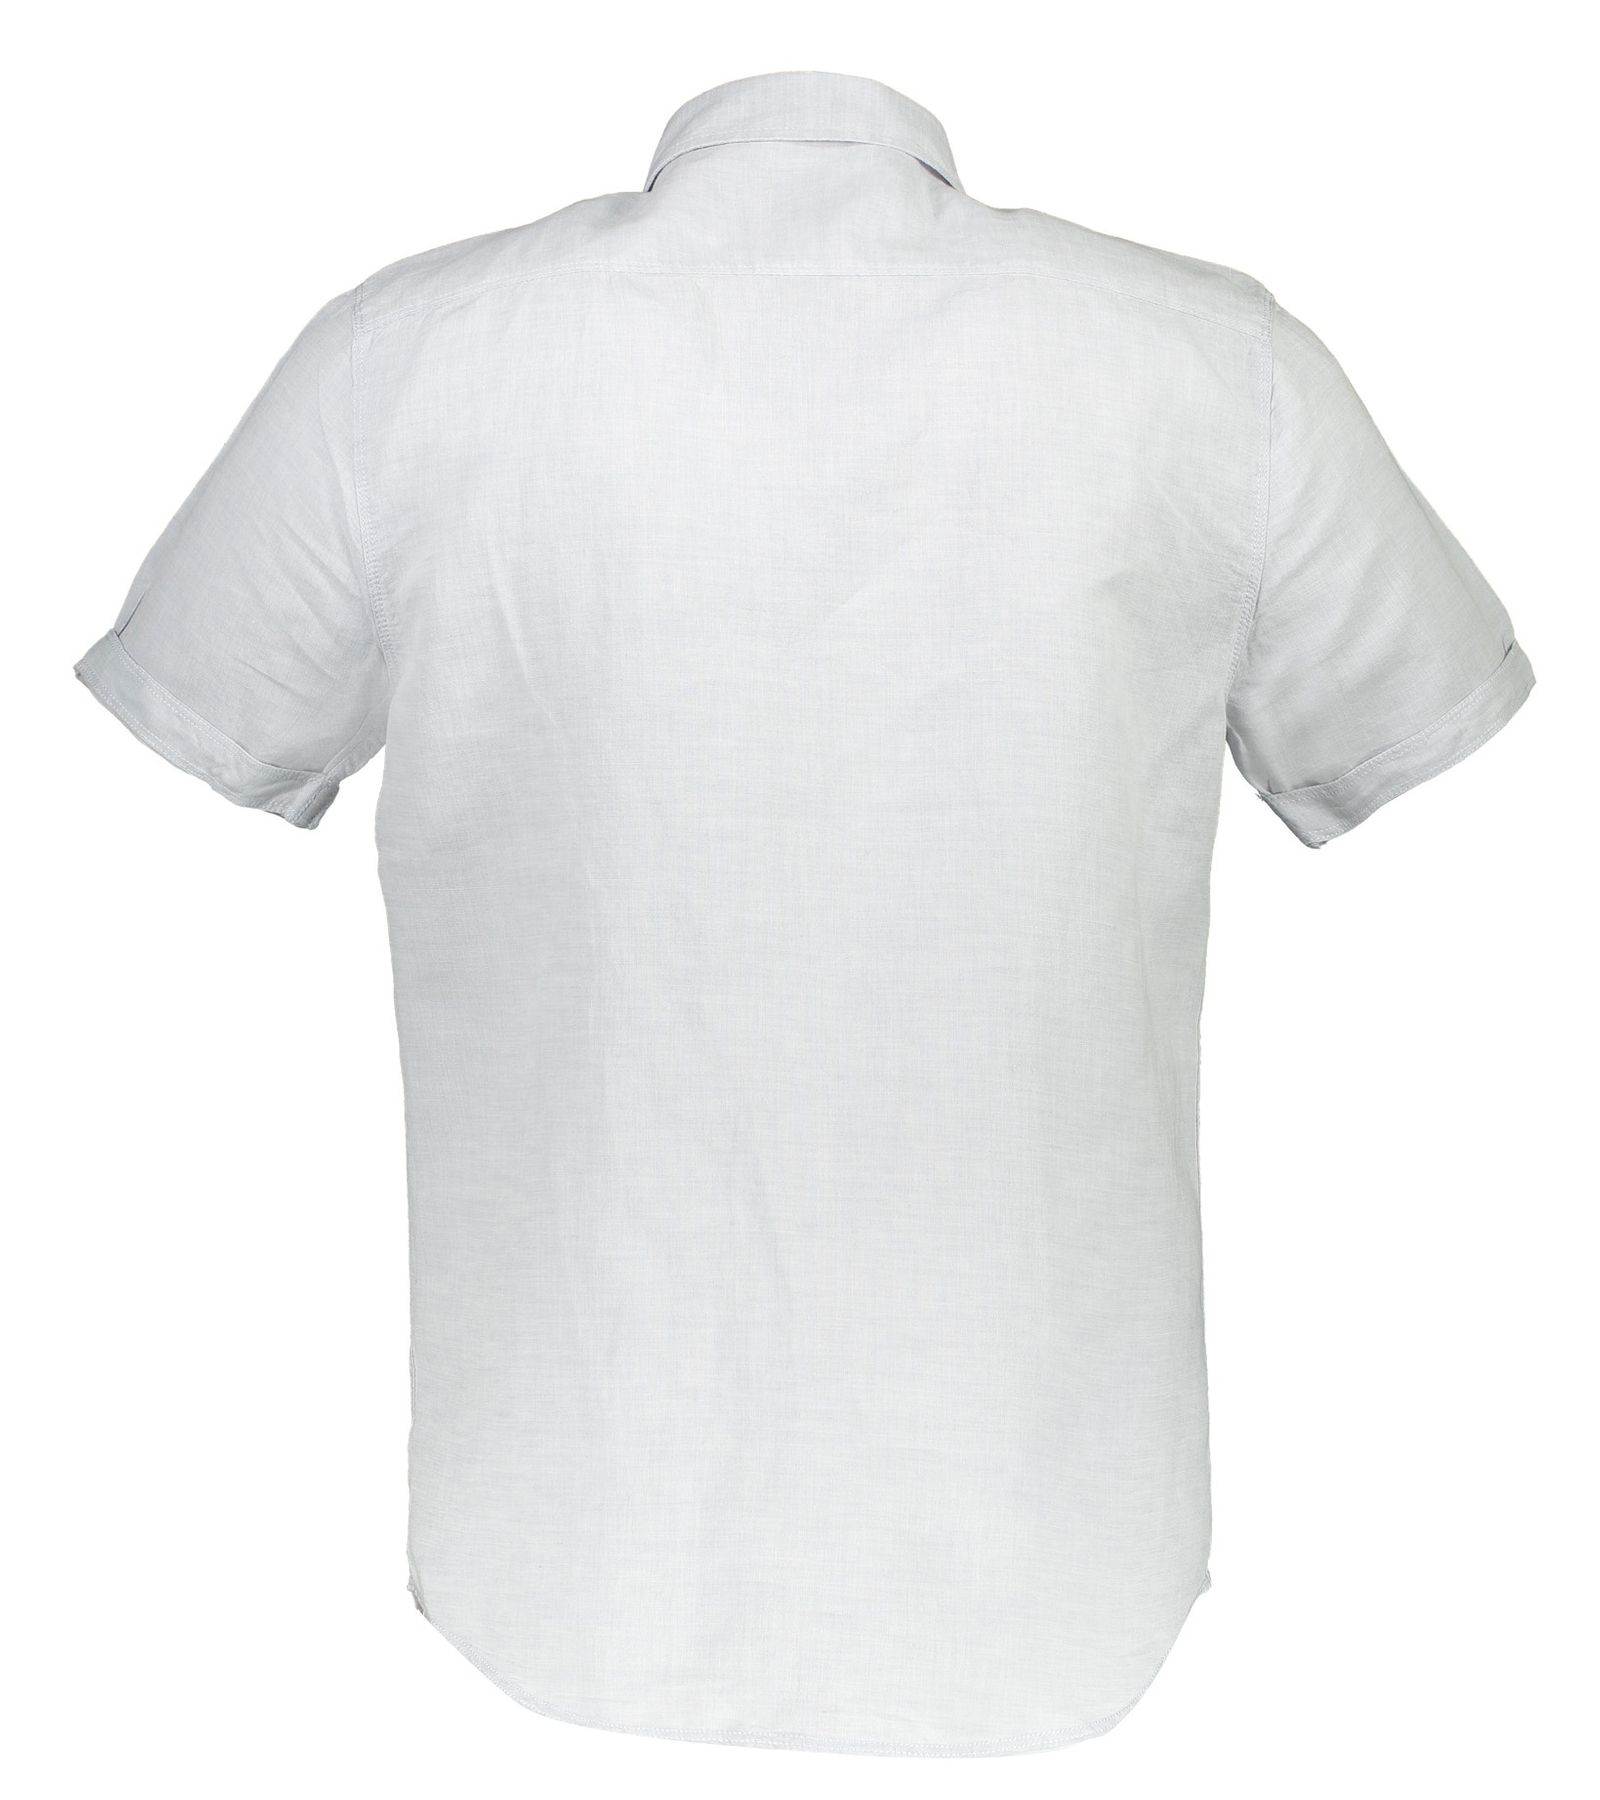 پیراهن آستین کوتاه مردانه - یوپیم - طوسي روشن - 4